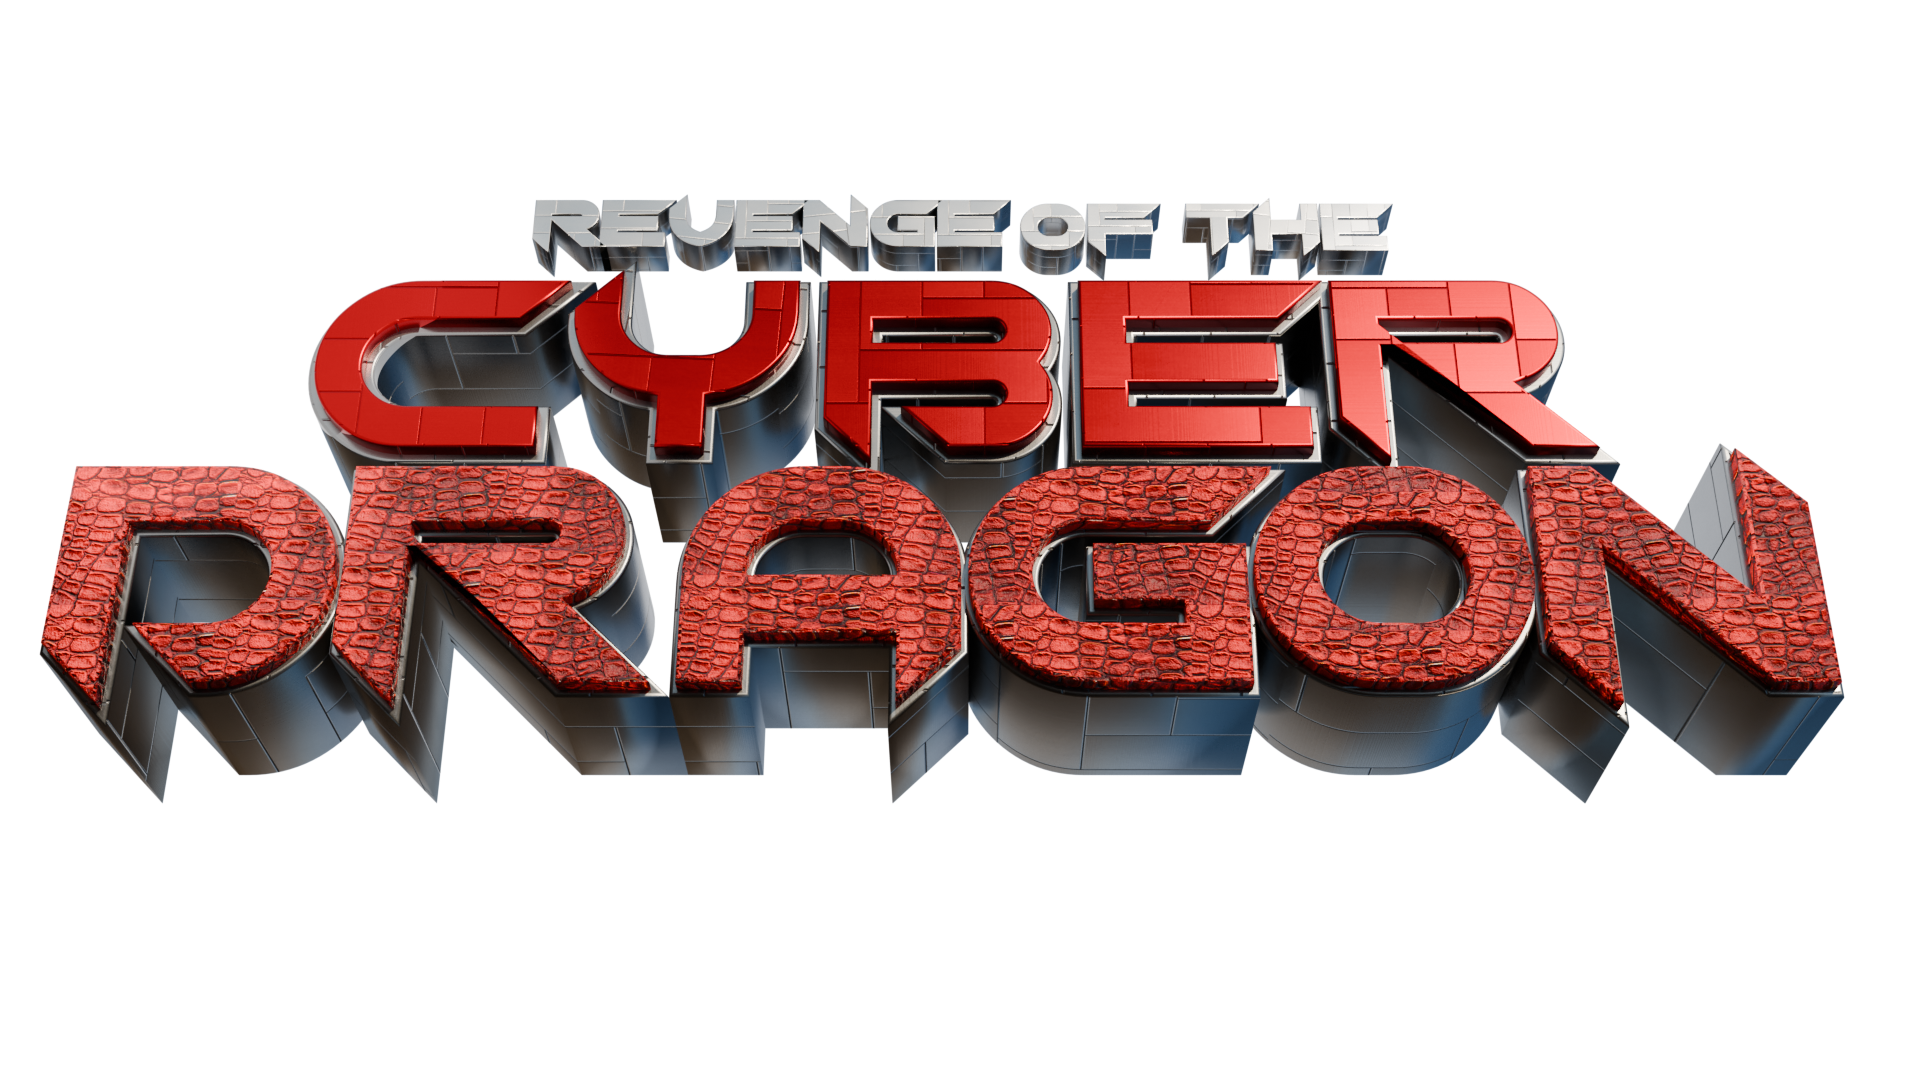 Revenge of the Cyber Dragon